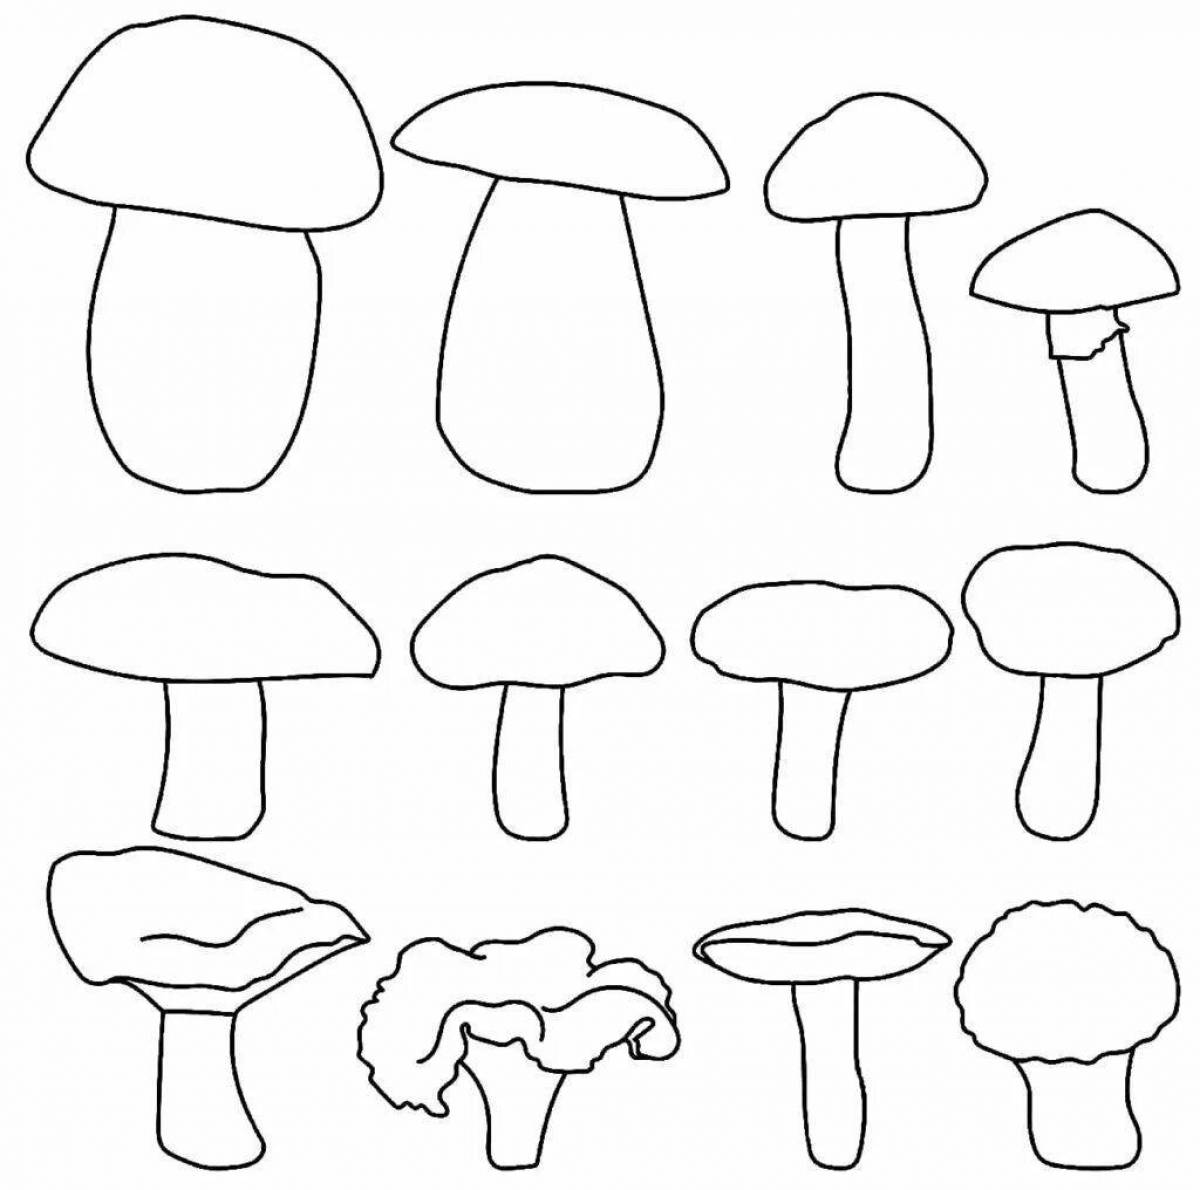 Выдающаяся раскраска с белыми грибами для детей